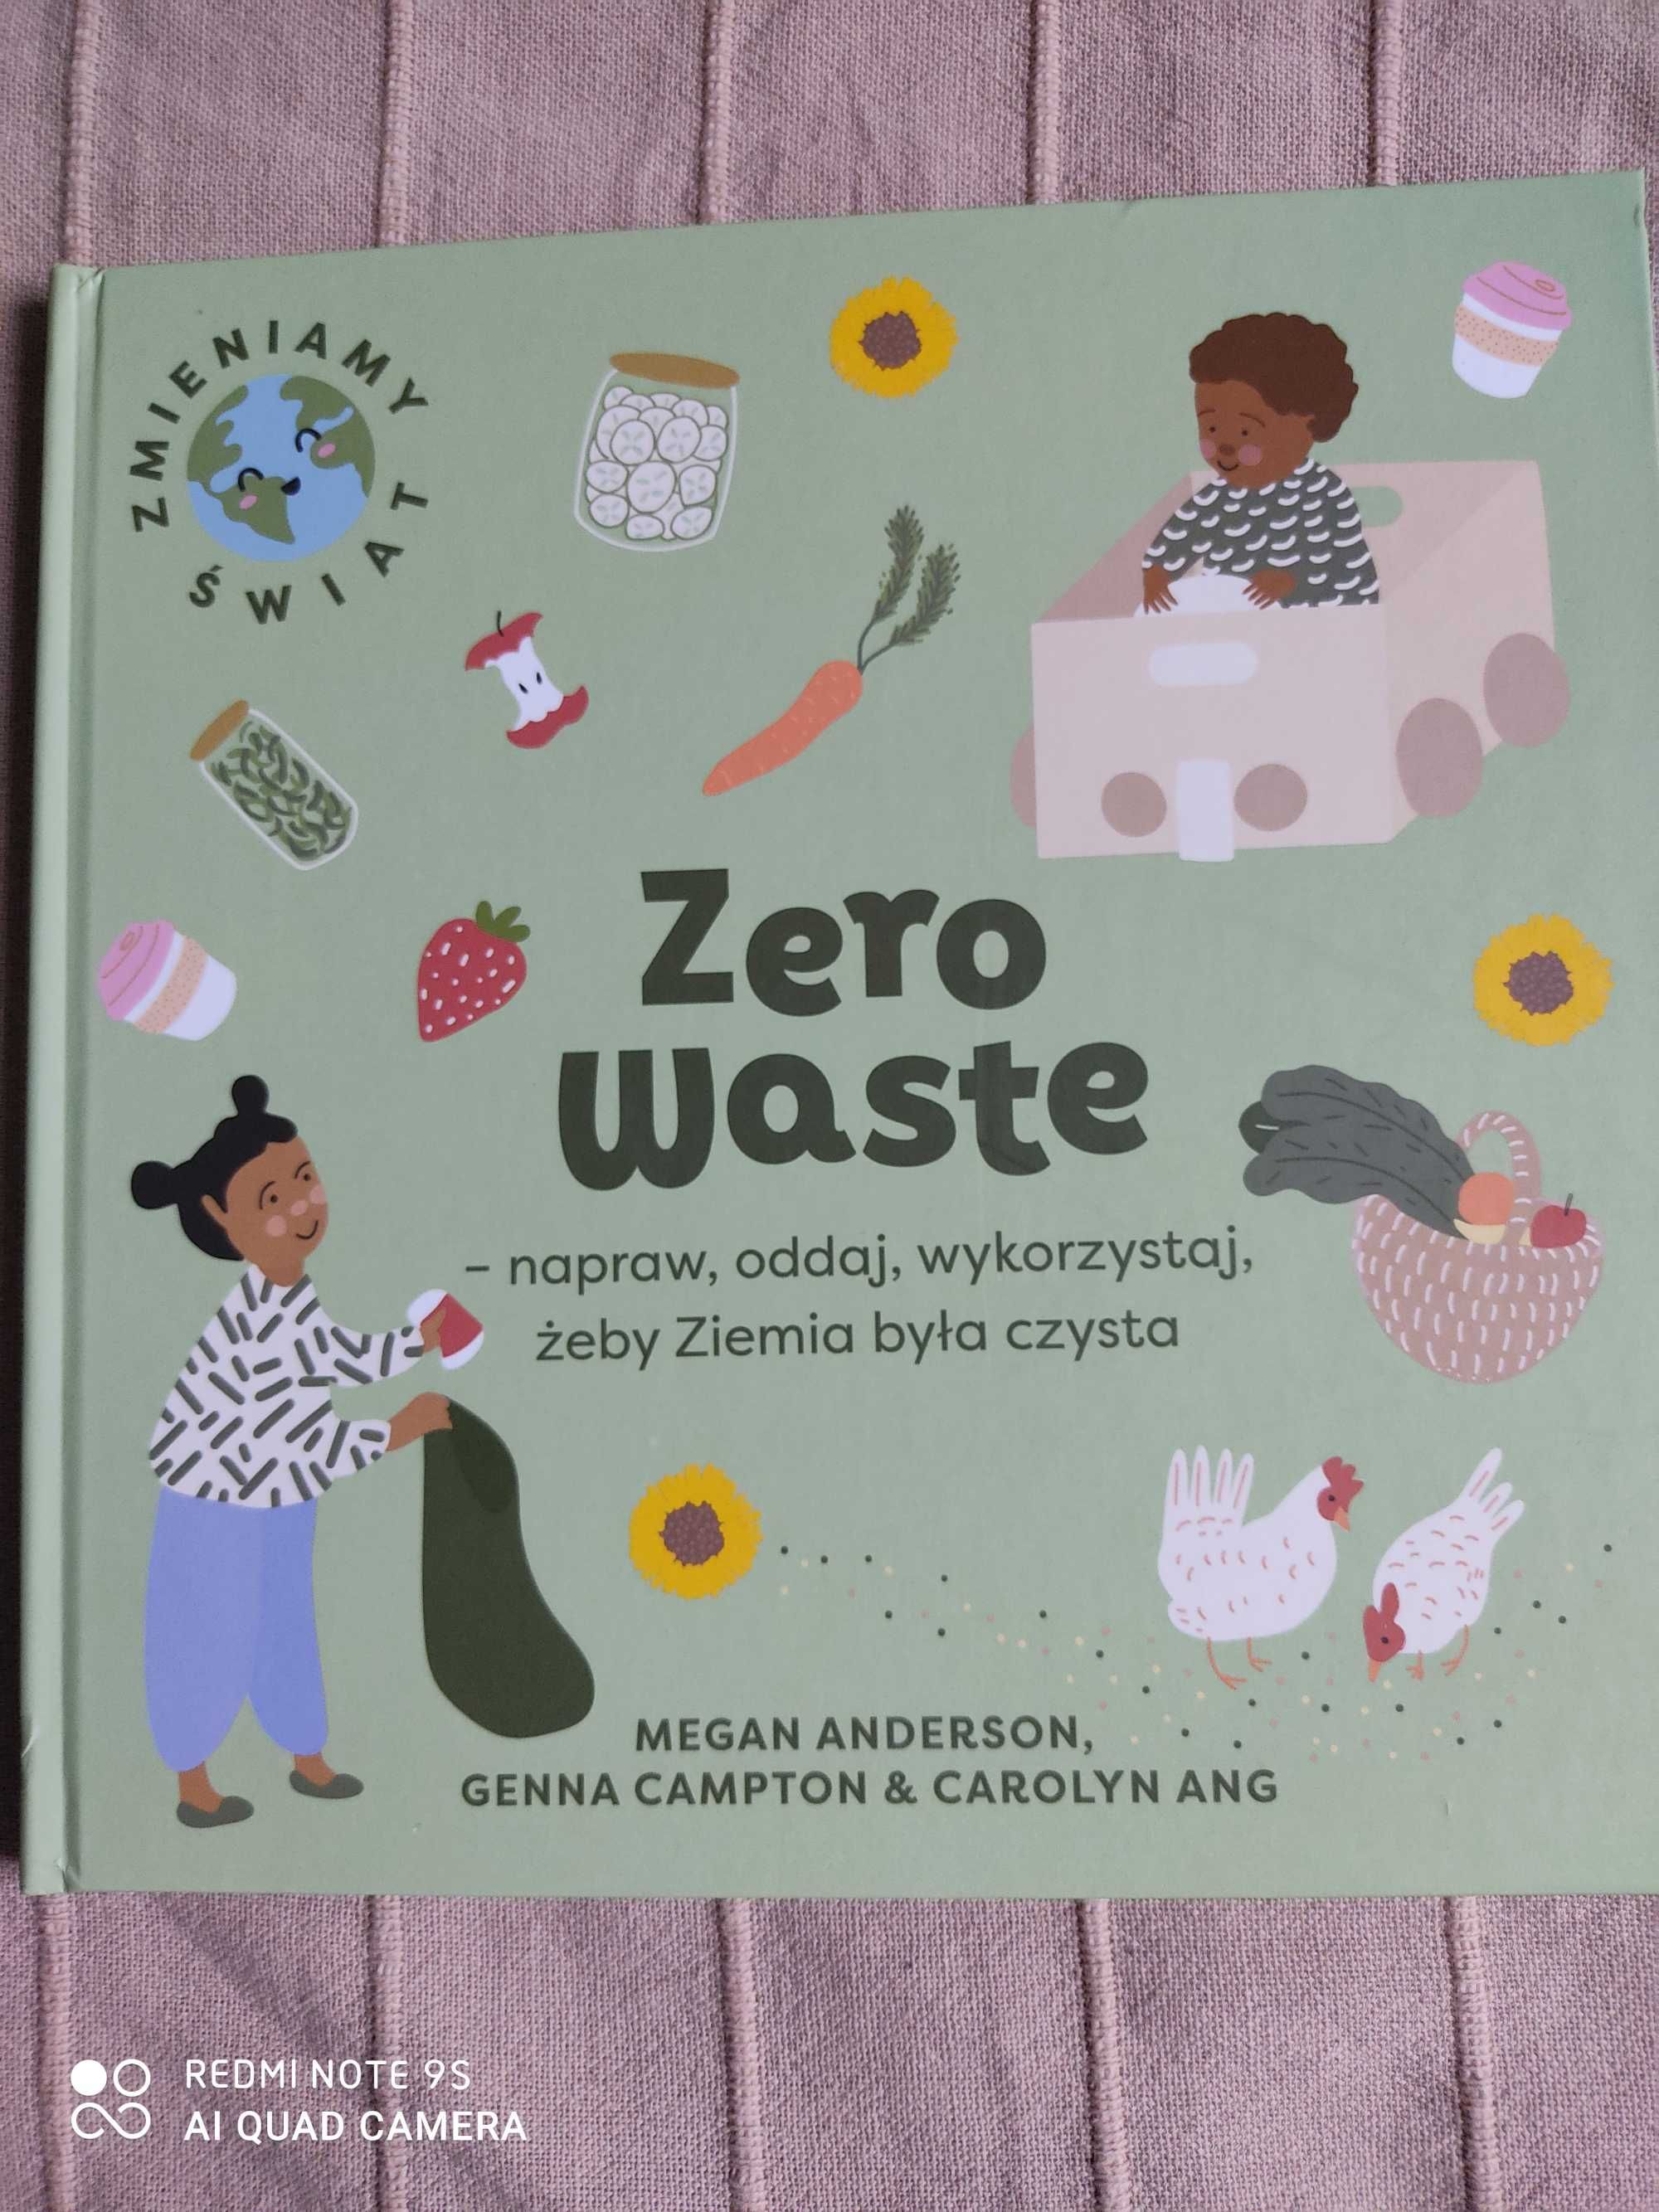 Zero waste: napraw, oddaj, wykorzystaj - książka dla dzieci jak nowa